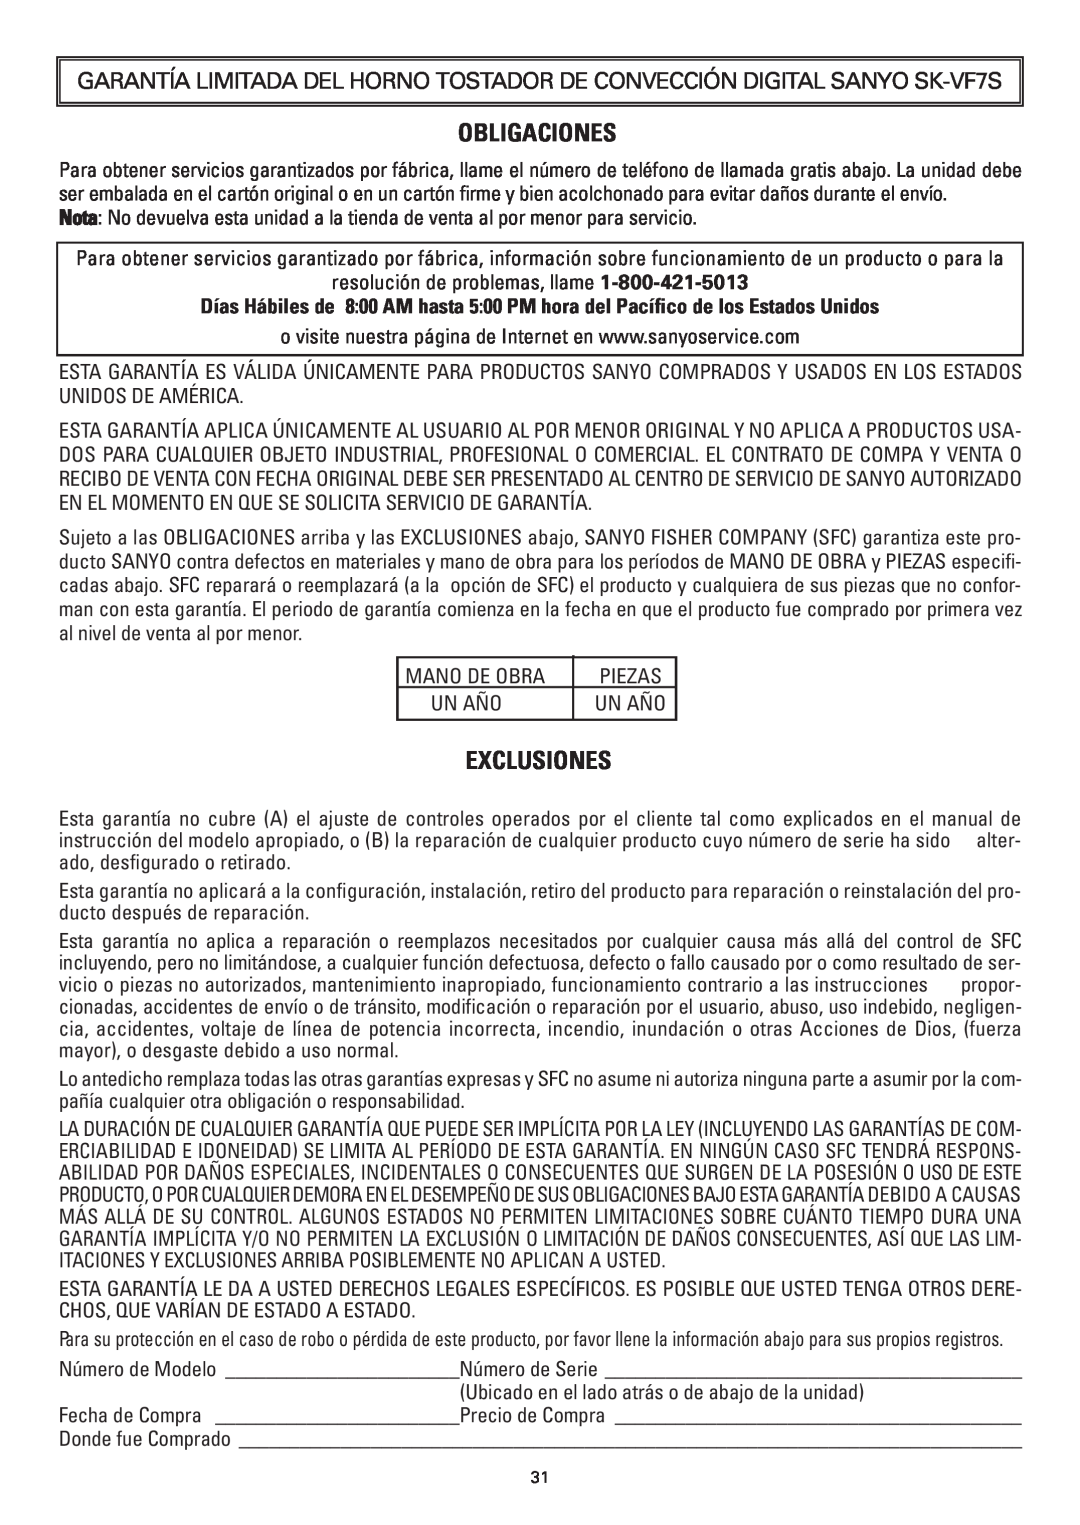 Sanyo SK-VF7S instruction manual Obligaciones, Exclusiones 